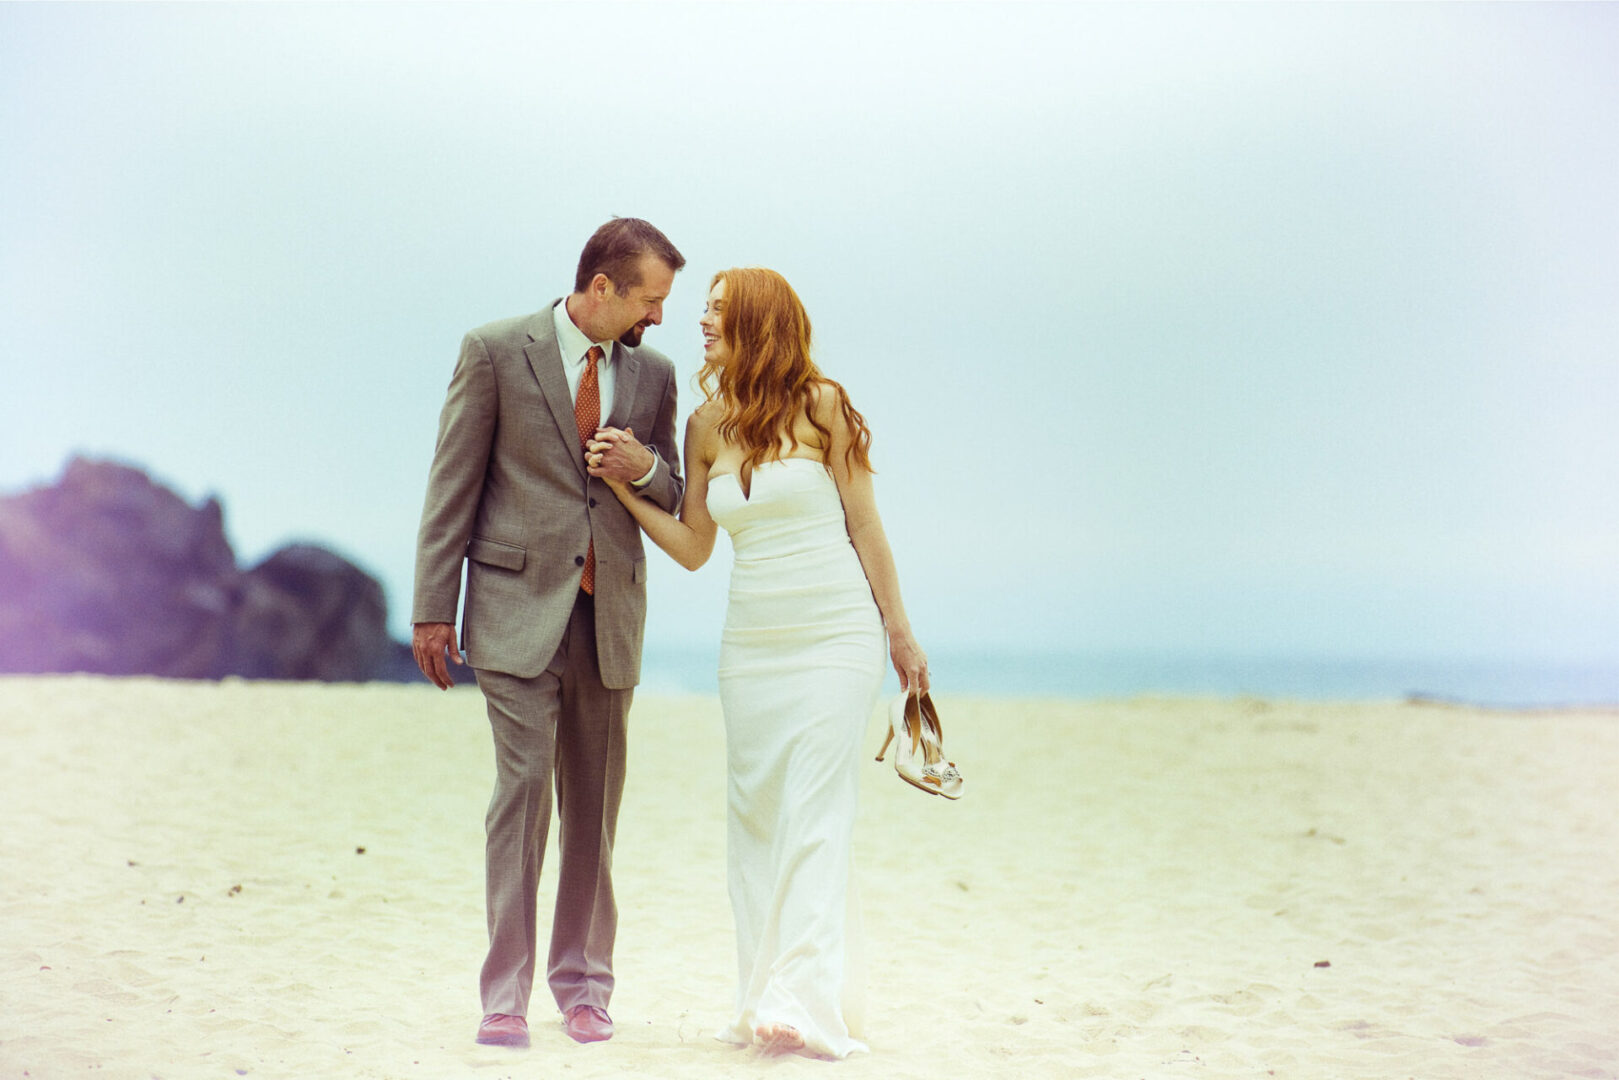 Bride and groom on a beach